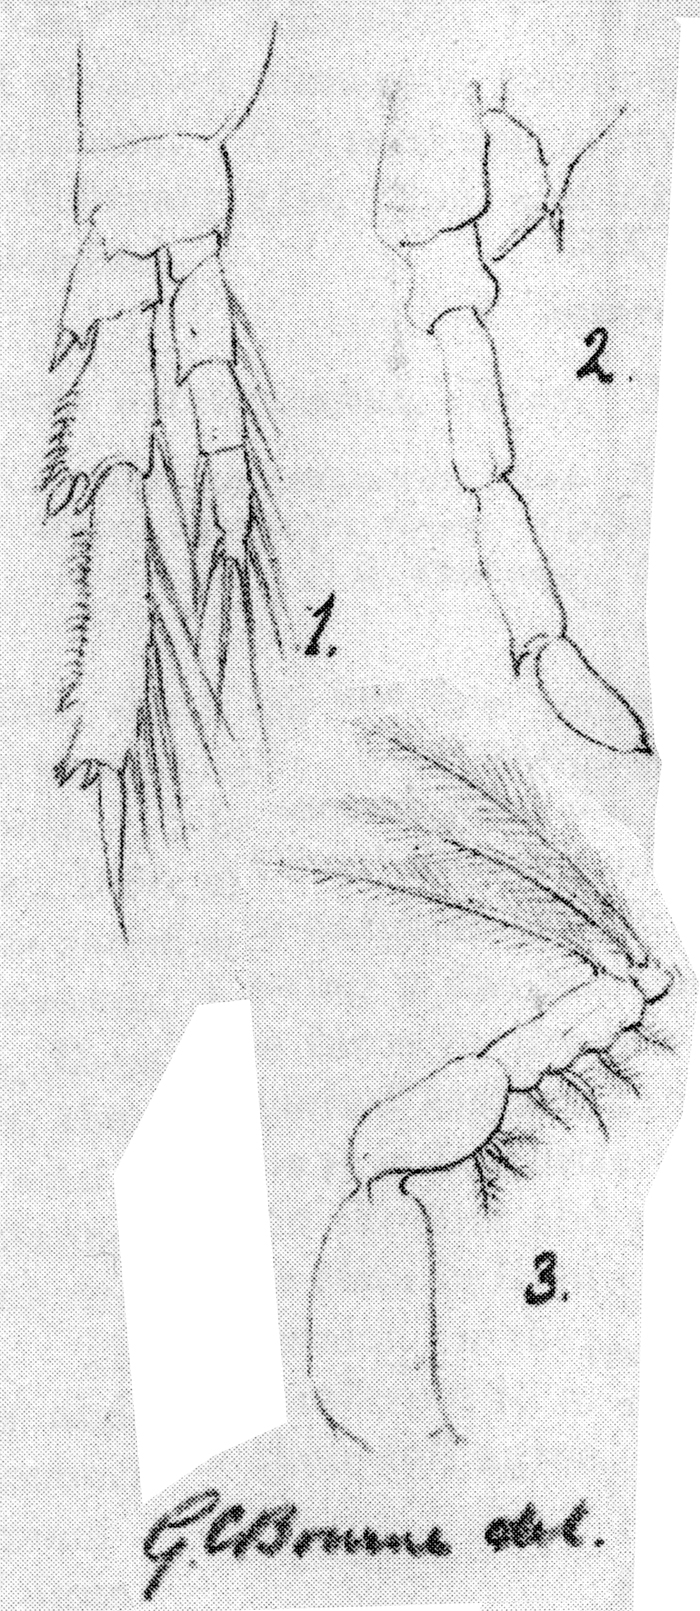 Espce Paracalanus parvus - Planche 12 de figures morphologiques